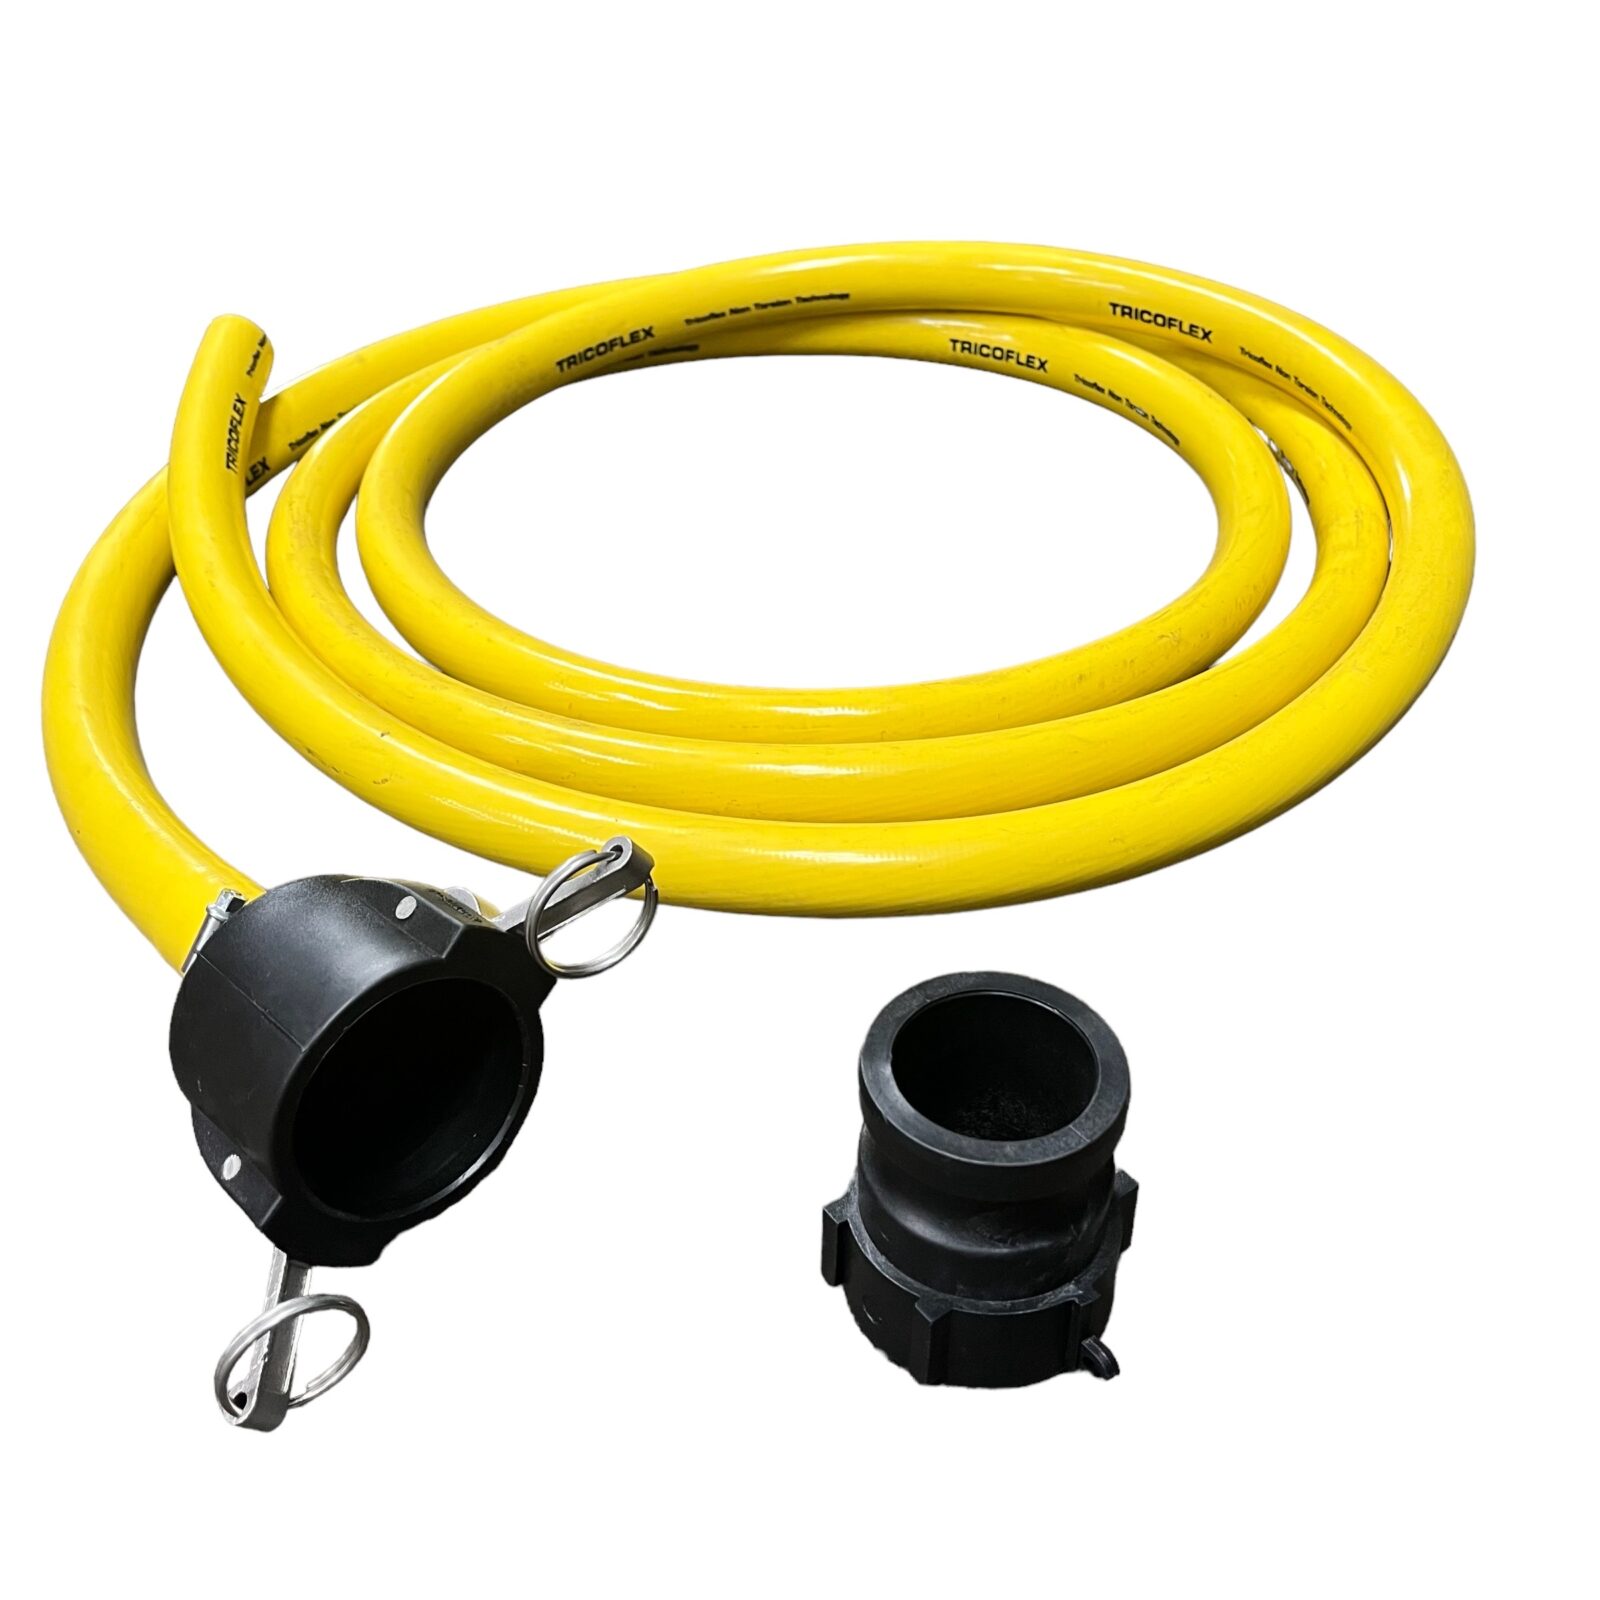 6M IBC Water hose kit